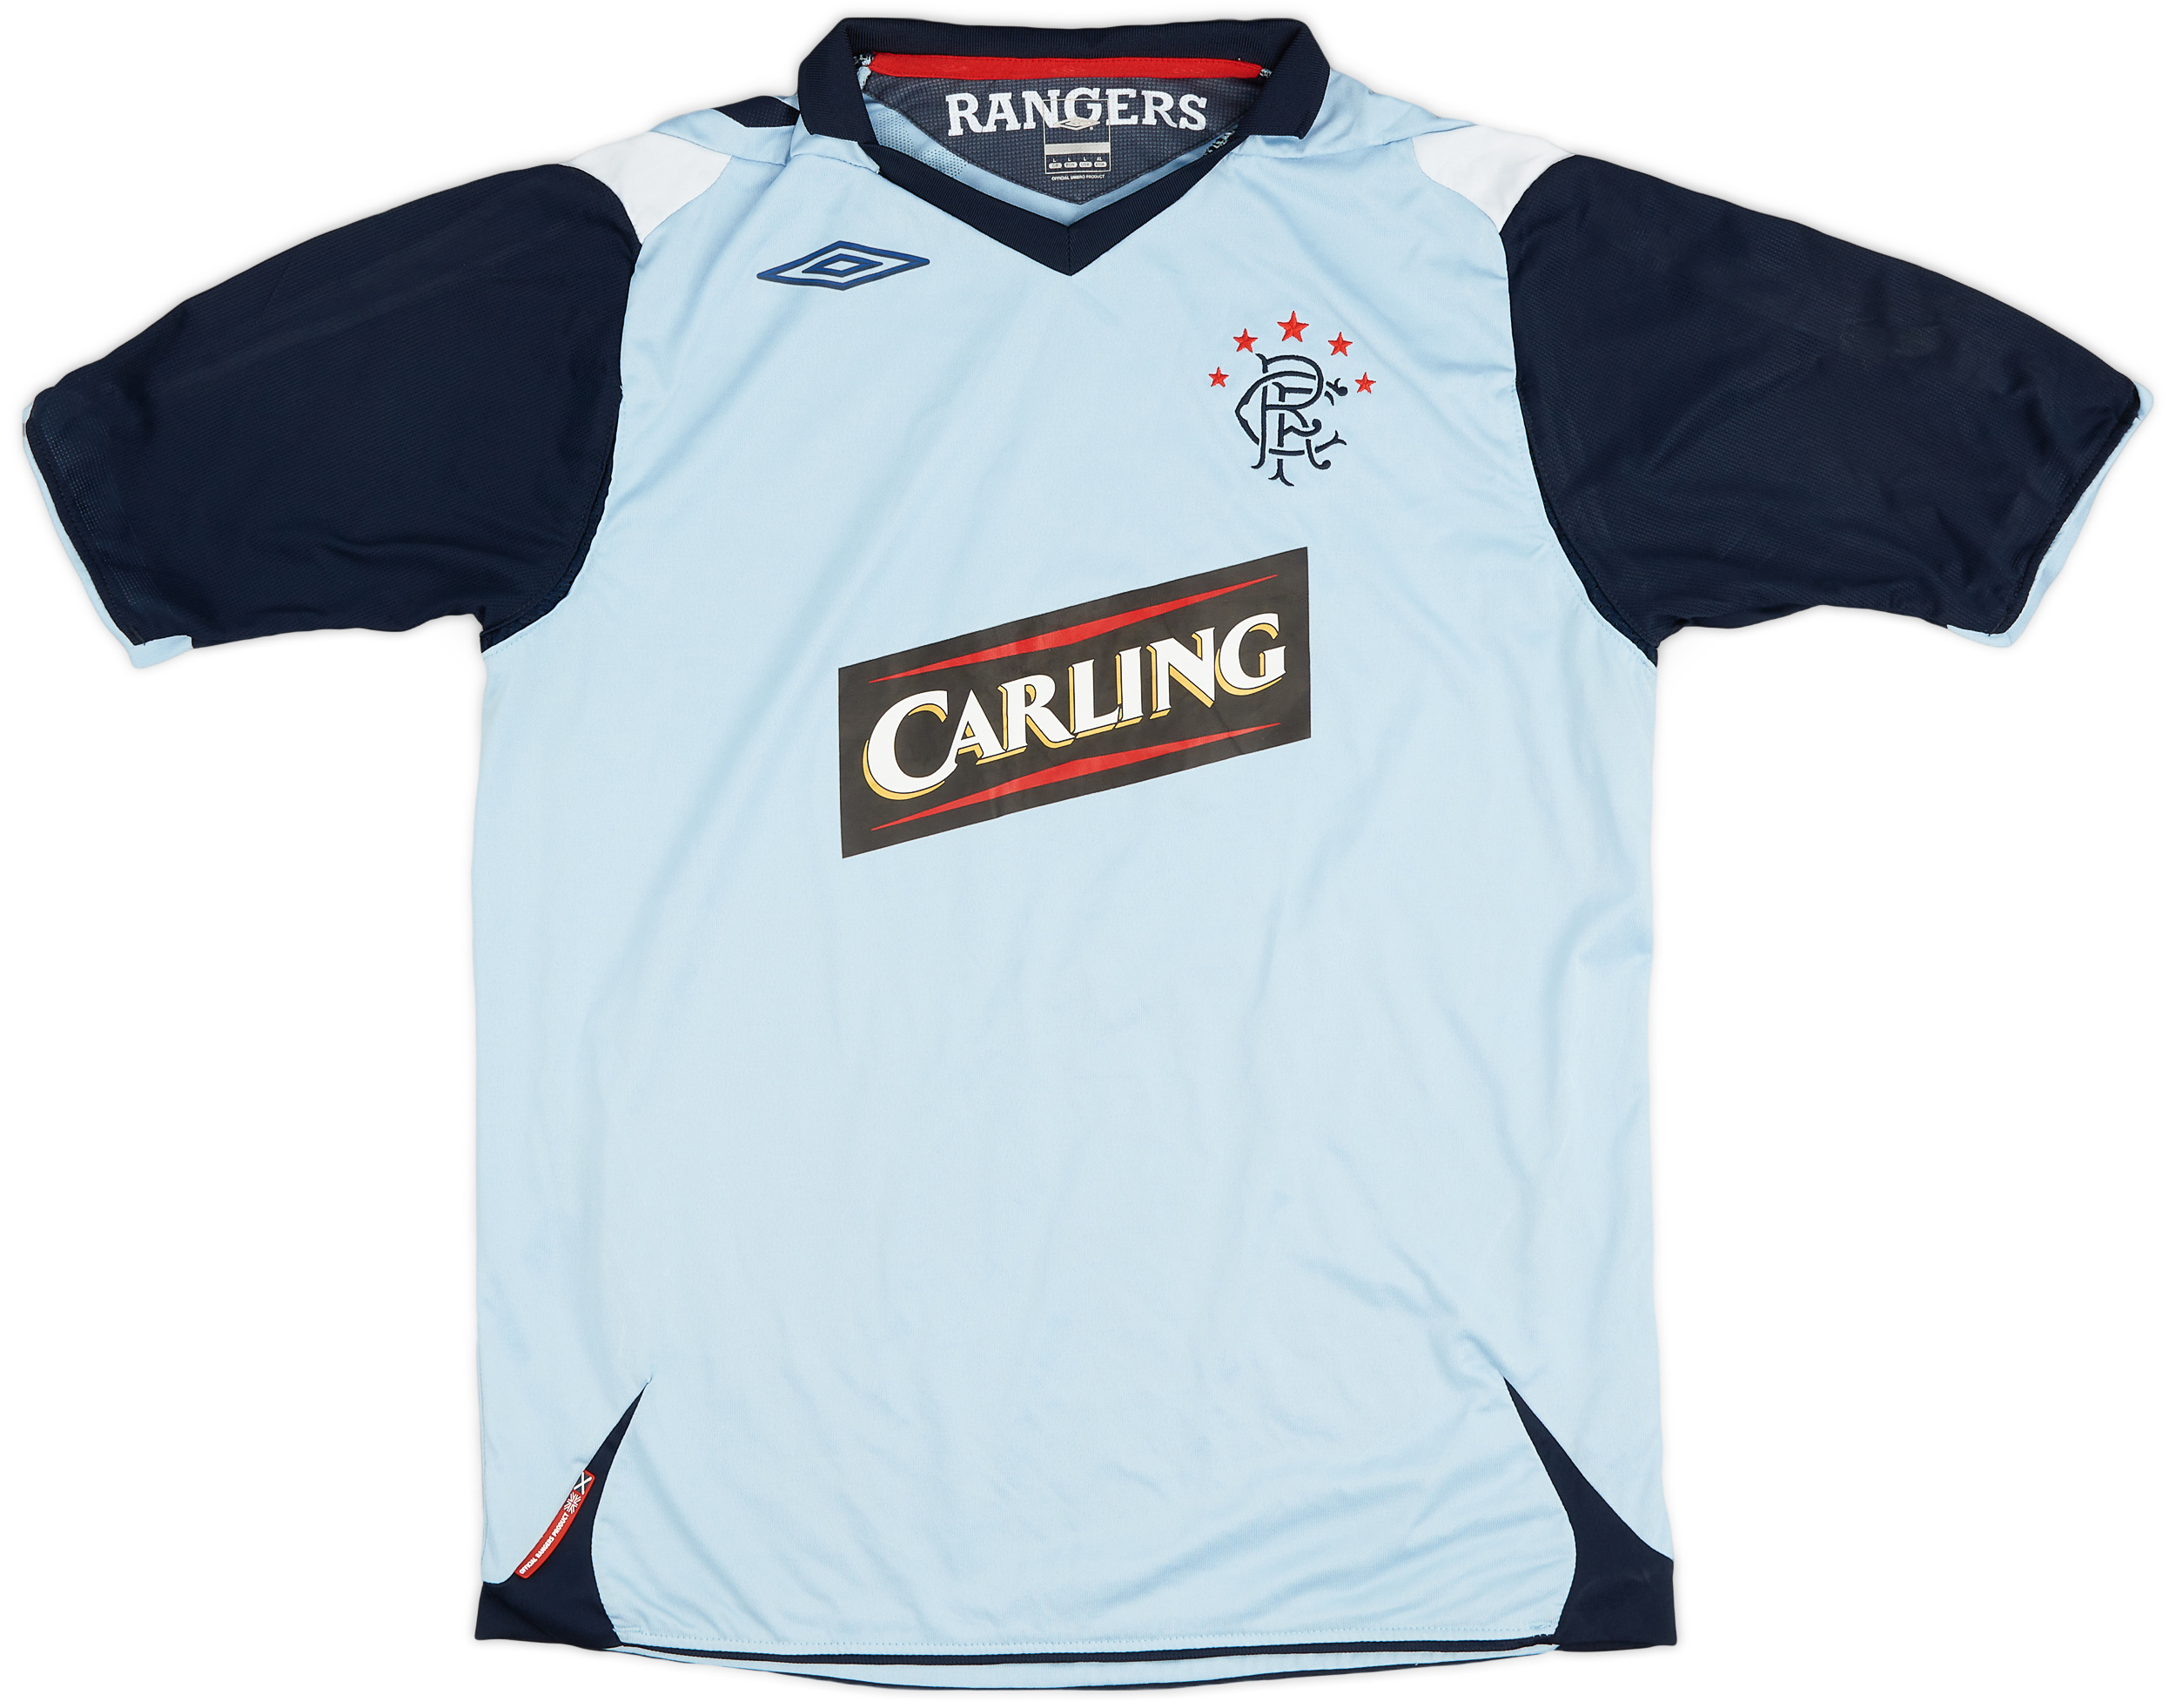 2006-07 Rangers Third Shirt - 9/10 - ()